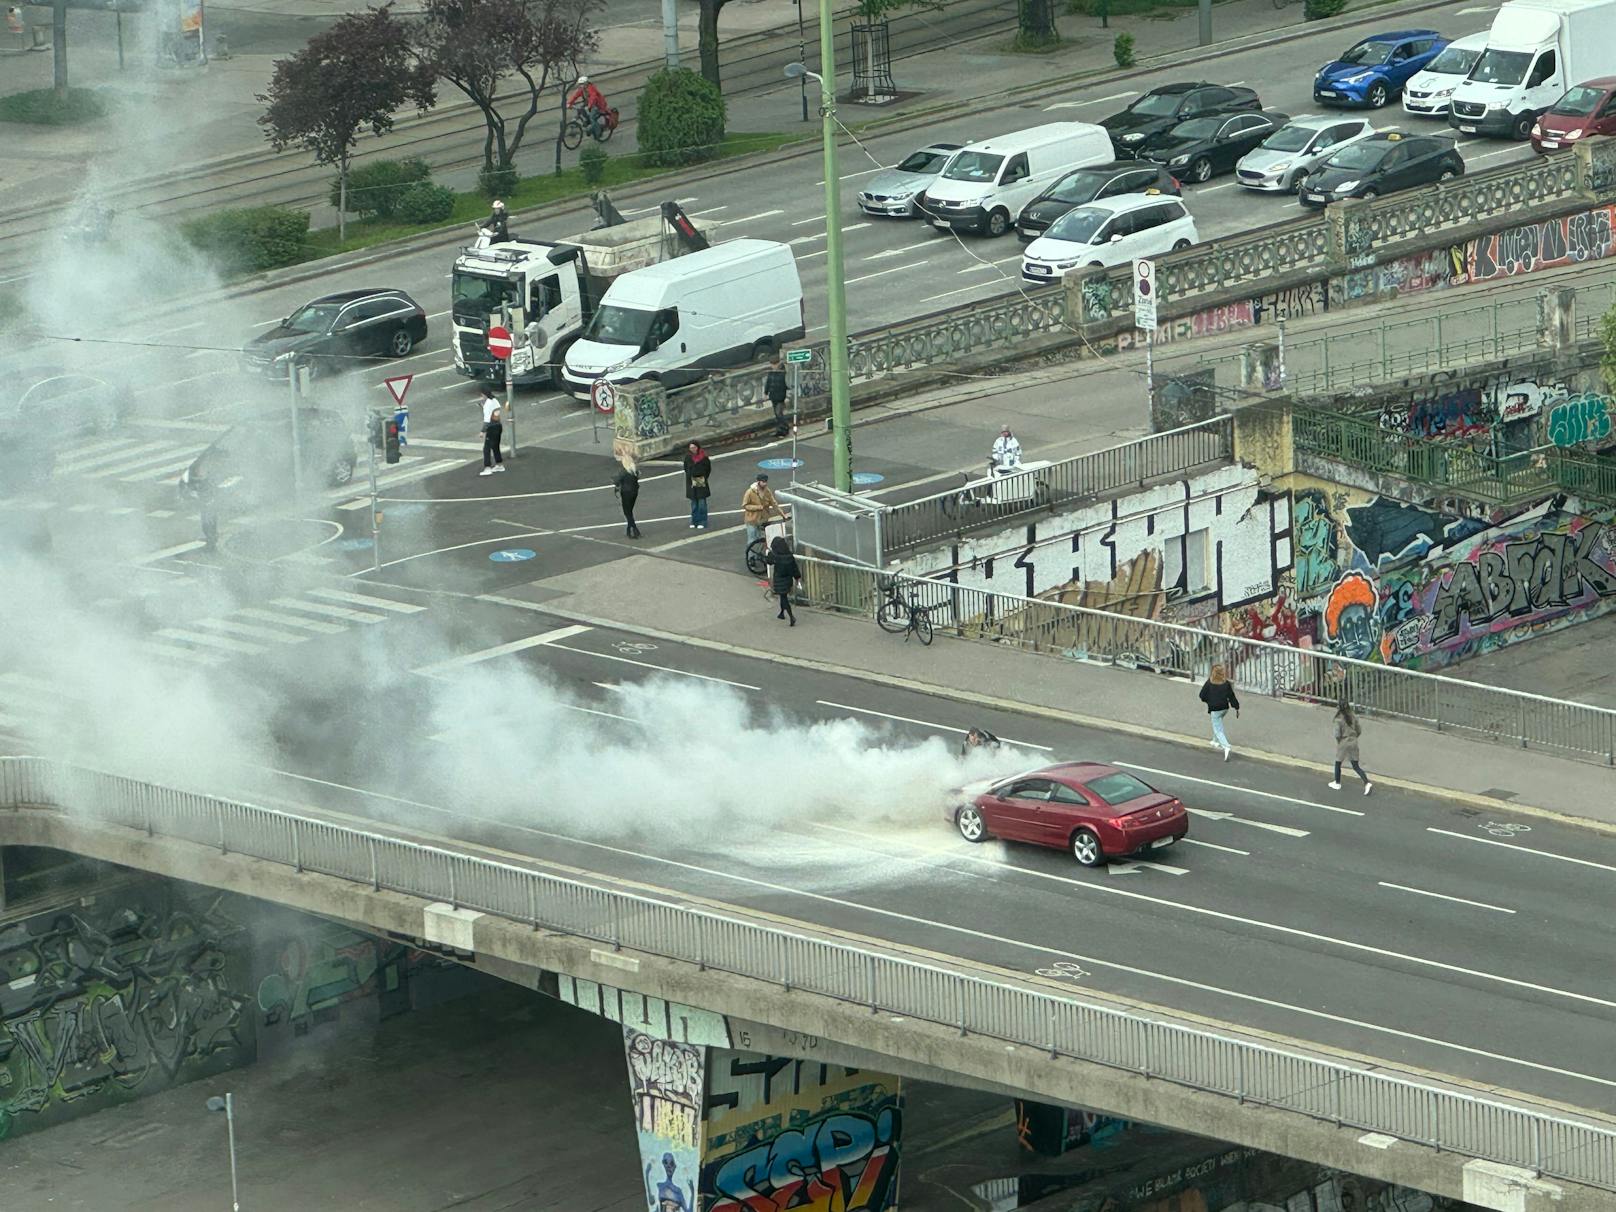 Am Mittwoch kam es zu einem Fahrzeugbrand am Schwedenplatz. Die Brücke wurde abgesperrt.